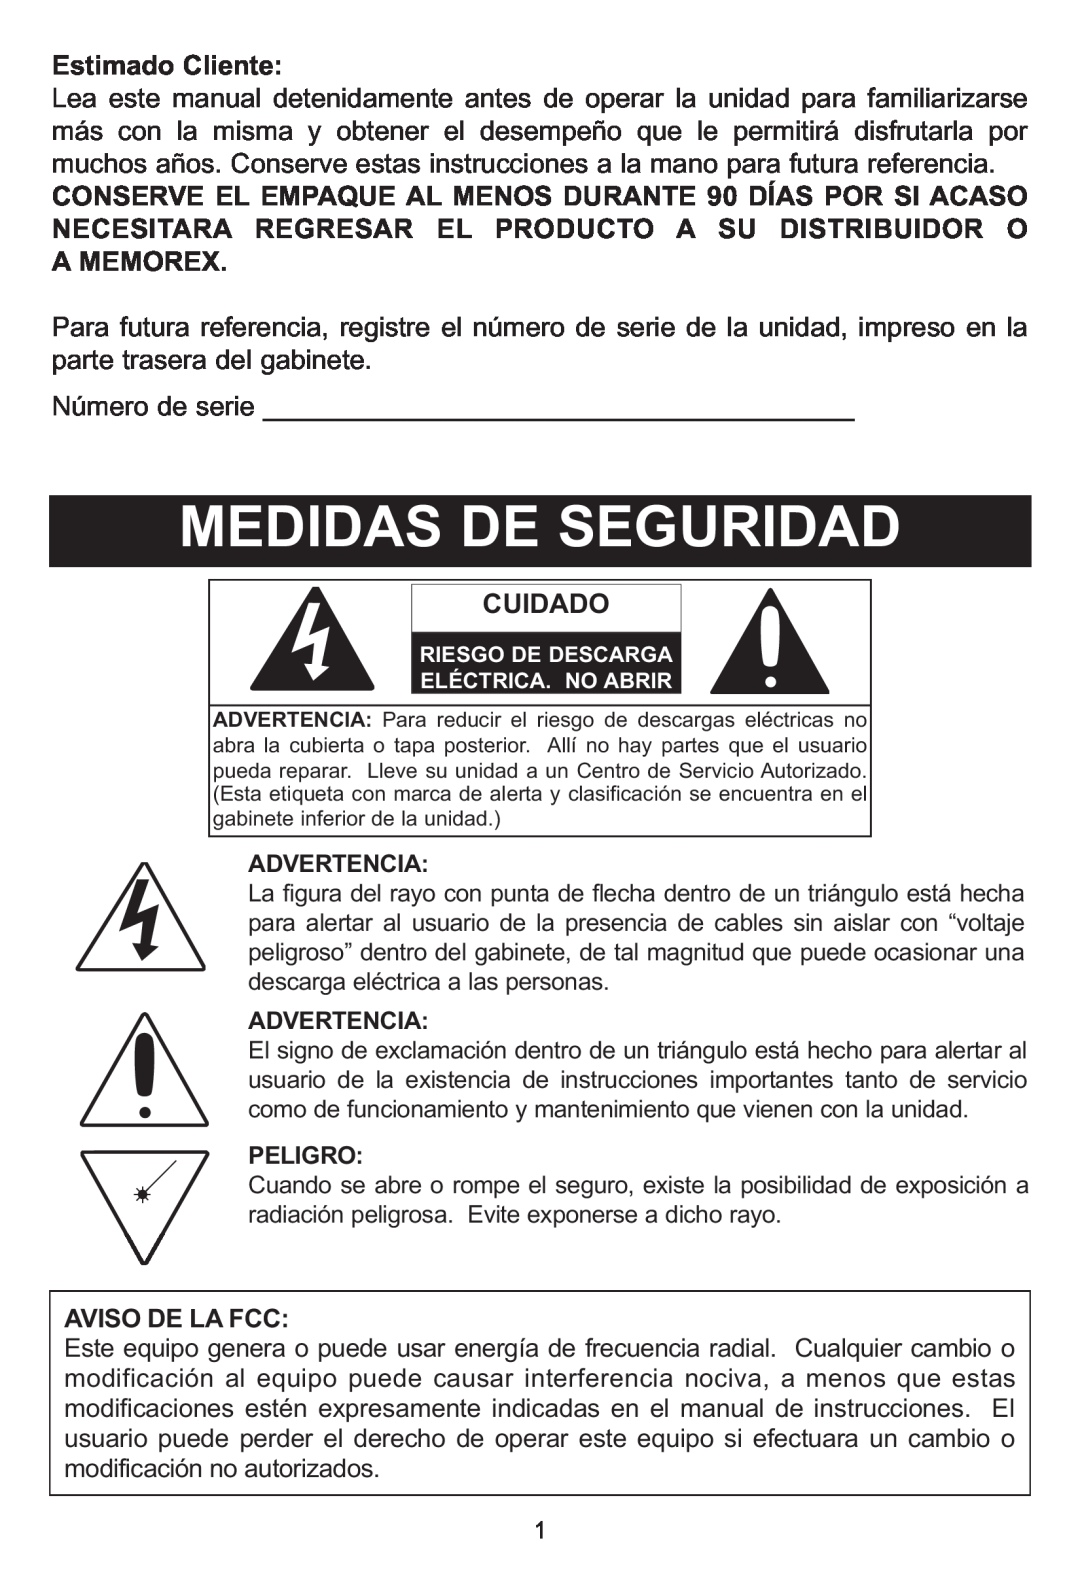 Memorex MP3848 manual Estimado Cliente, Cuidado, Aviso De La Fcc, Advertencia, Peligro 